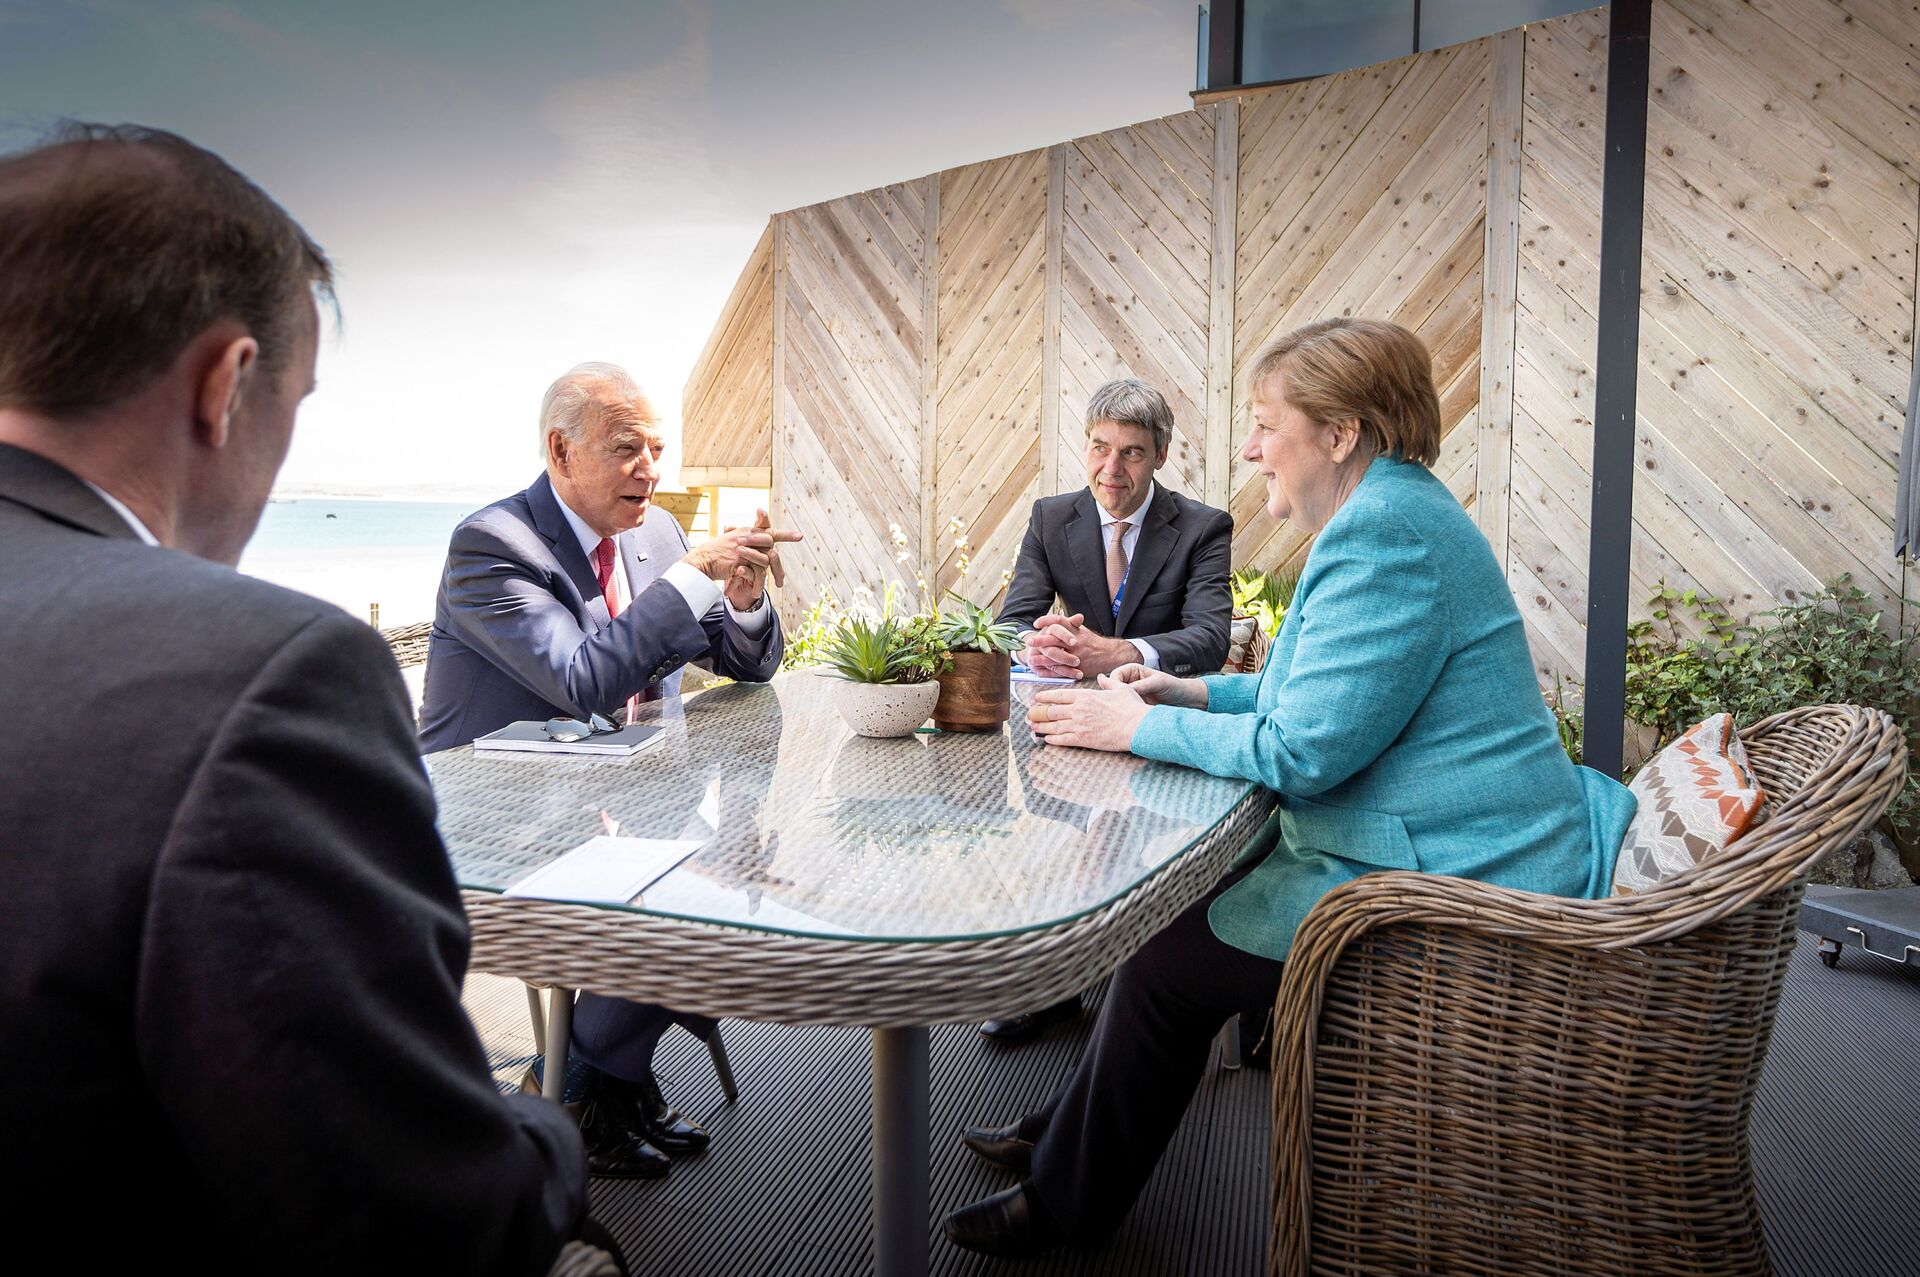 Tổng thống Mỹ Joe Biden, người đứng đầu Cục Chính sách Đối ngoại, An ninh và Phát triển Kinh tế và Xã hội của văn phòng thủ tướng Đức Jan Hecker, thủ tướng Angela Merkel tại Hội nghị thượng đỉnh G7 tại Anh, tháng 6 năm 2021  - Sputnik Việt Nam, 1920, 05.10.2021